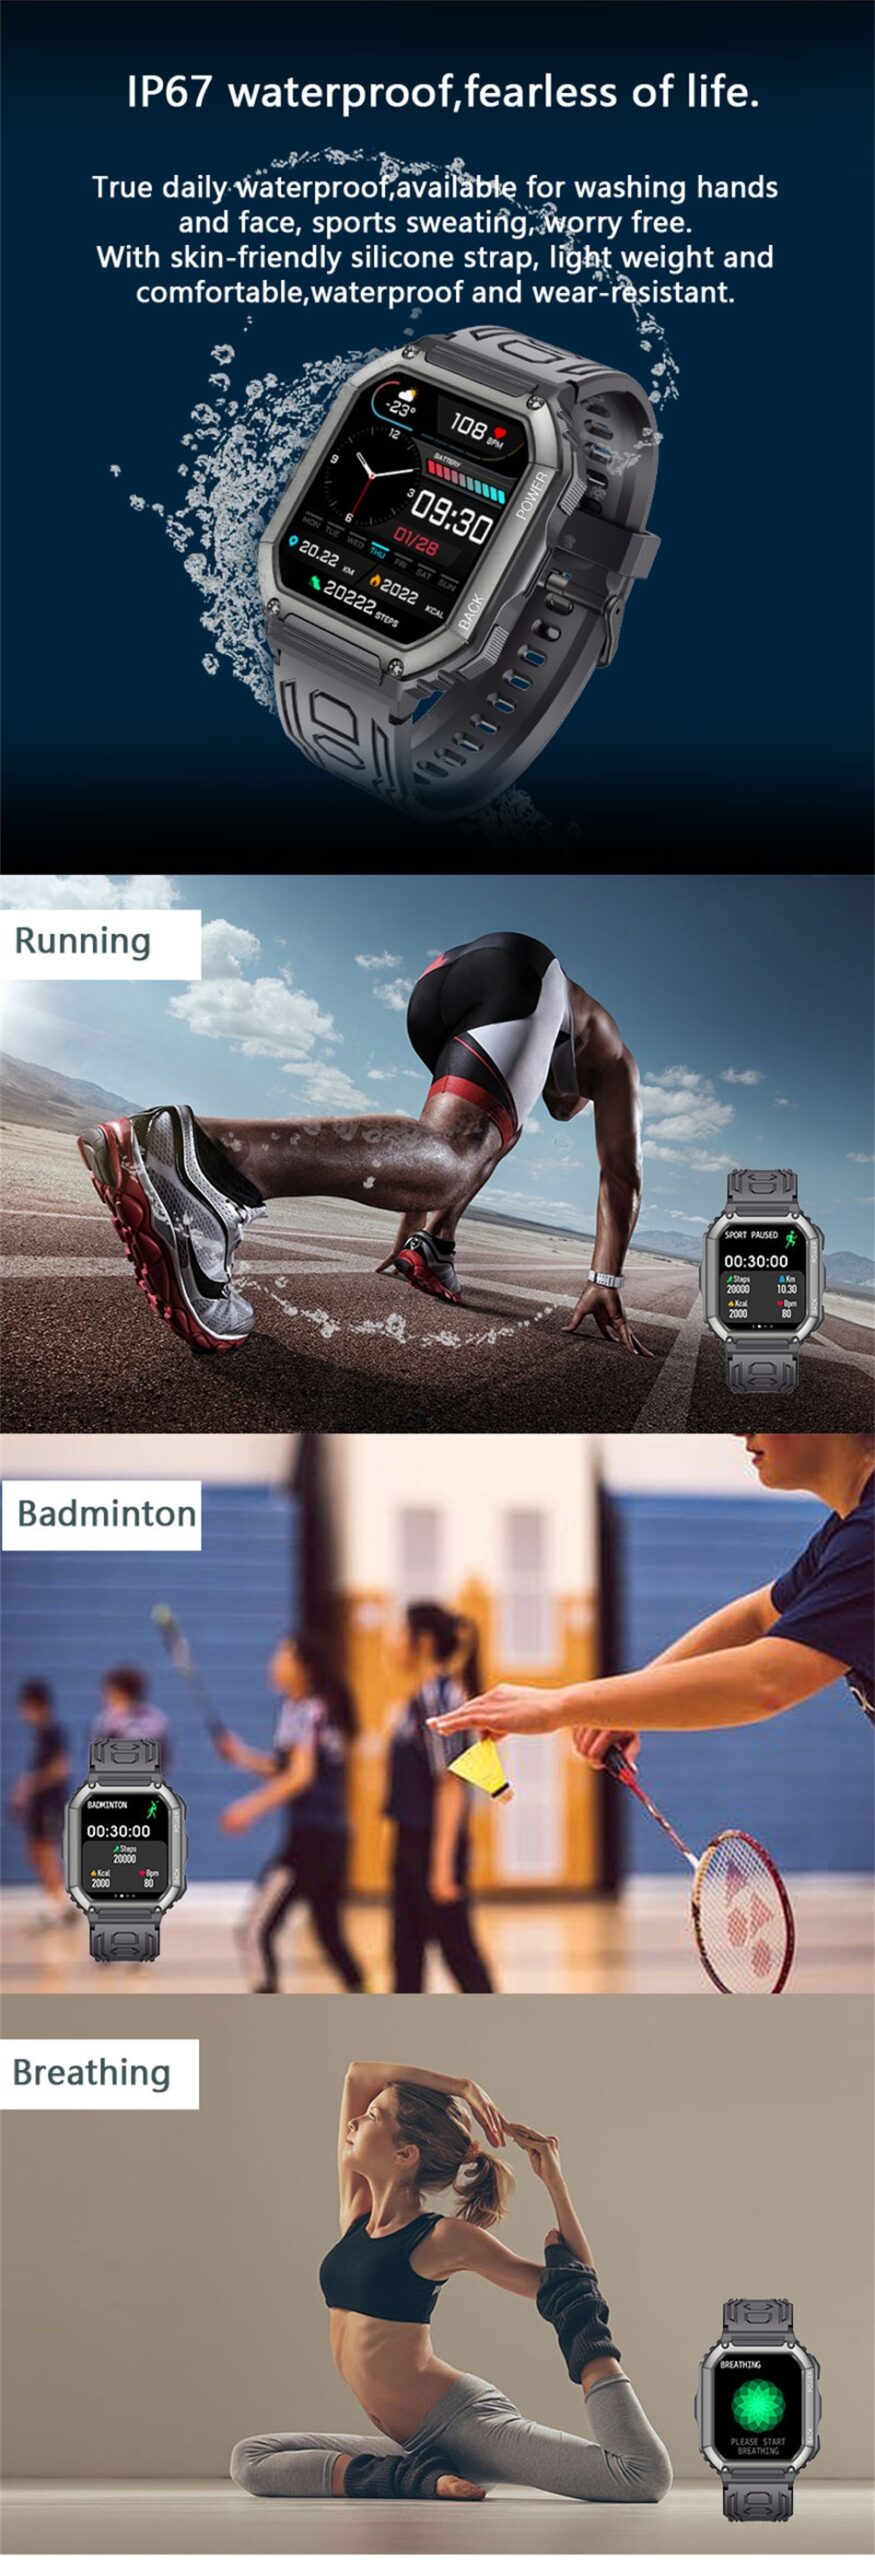 LIGE Sports v3.0 - KR06 Long Standby Smartwatch